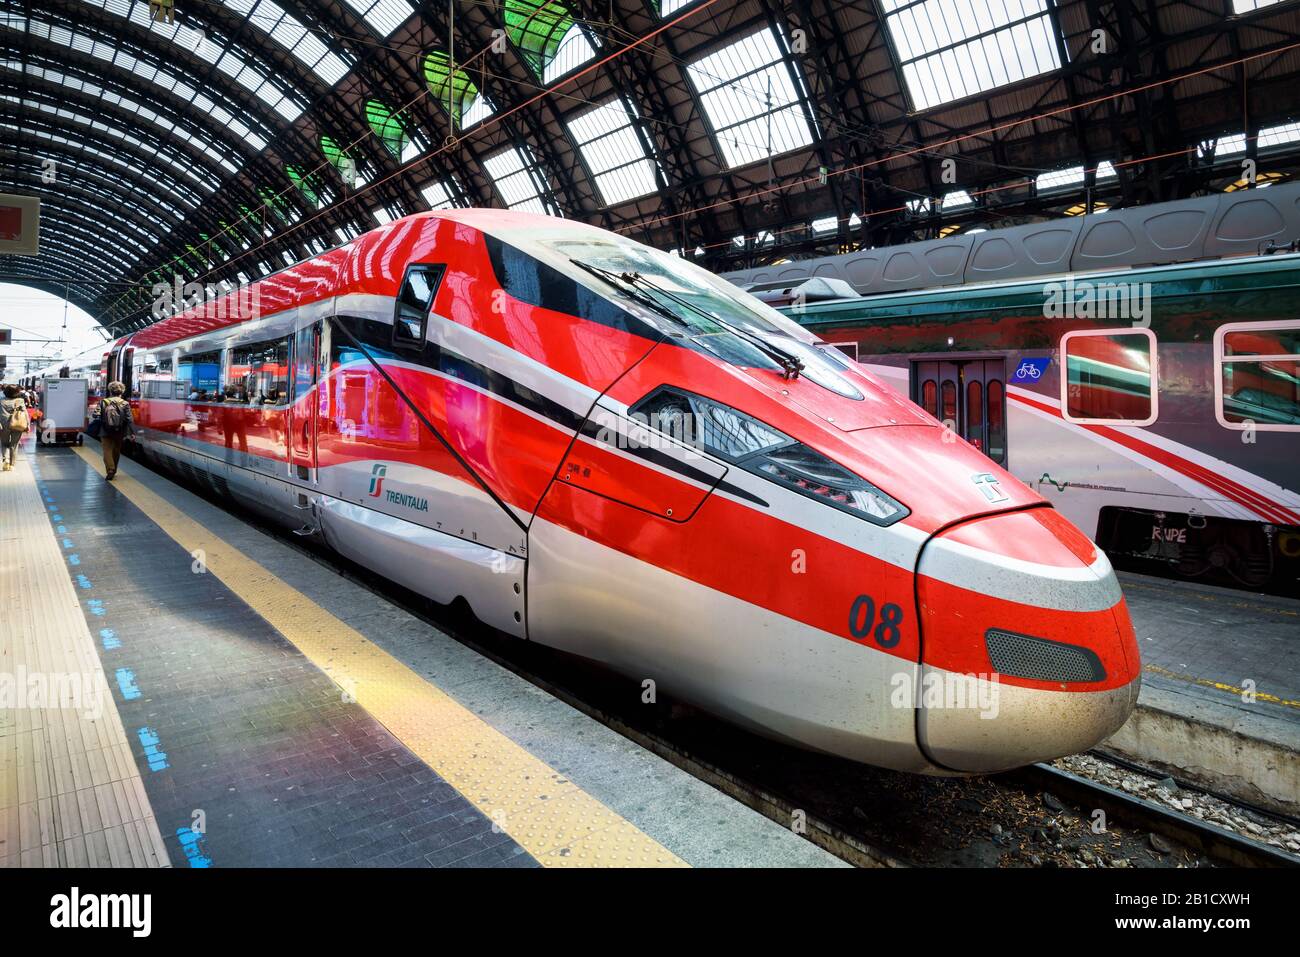 Mailand, Italien - 17. Mai 2017: Moderner Hochgeschwindigkeitszug am Mailänder Hauptbahnhof. Stockfoto